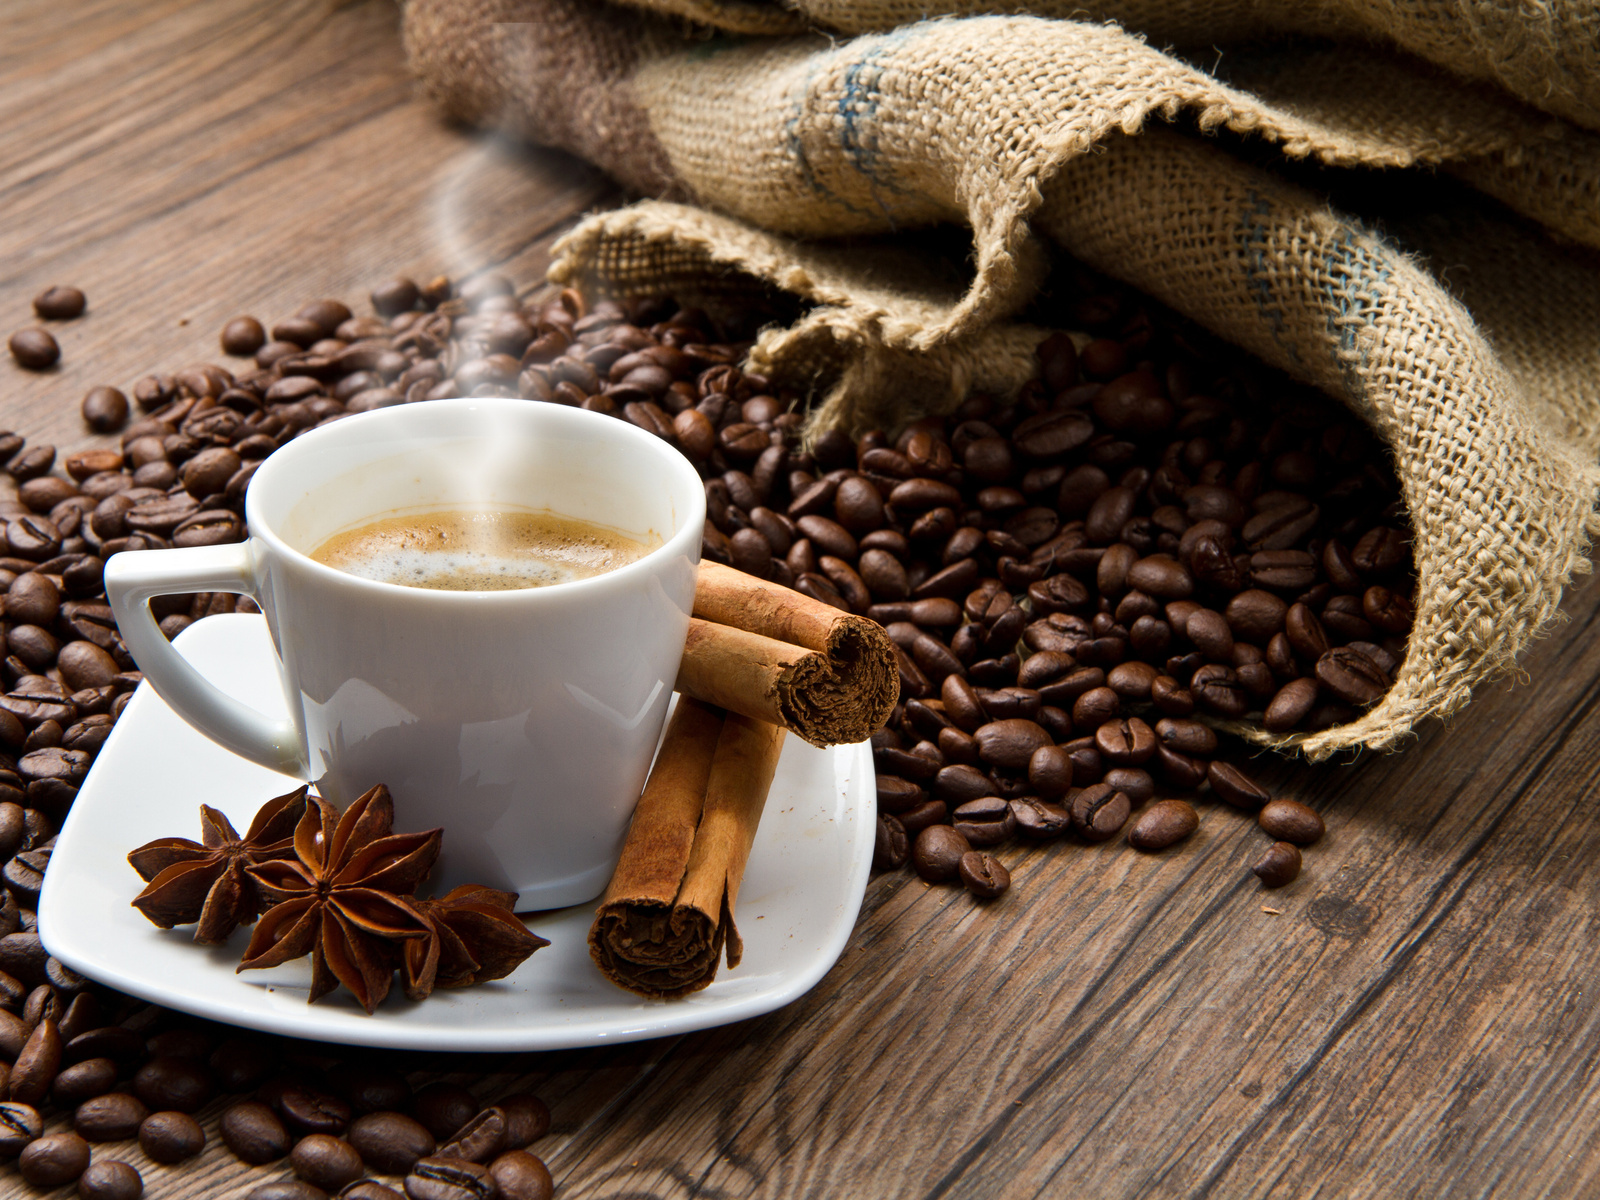 Увеличивающийся спрос на бодрость: тенденции отечественного кофейного рынка 